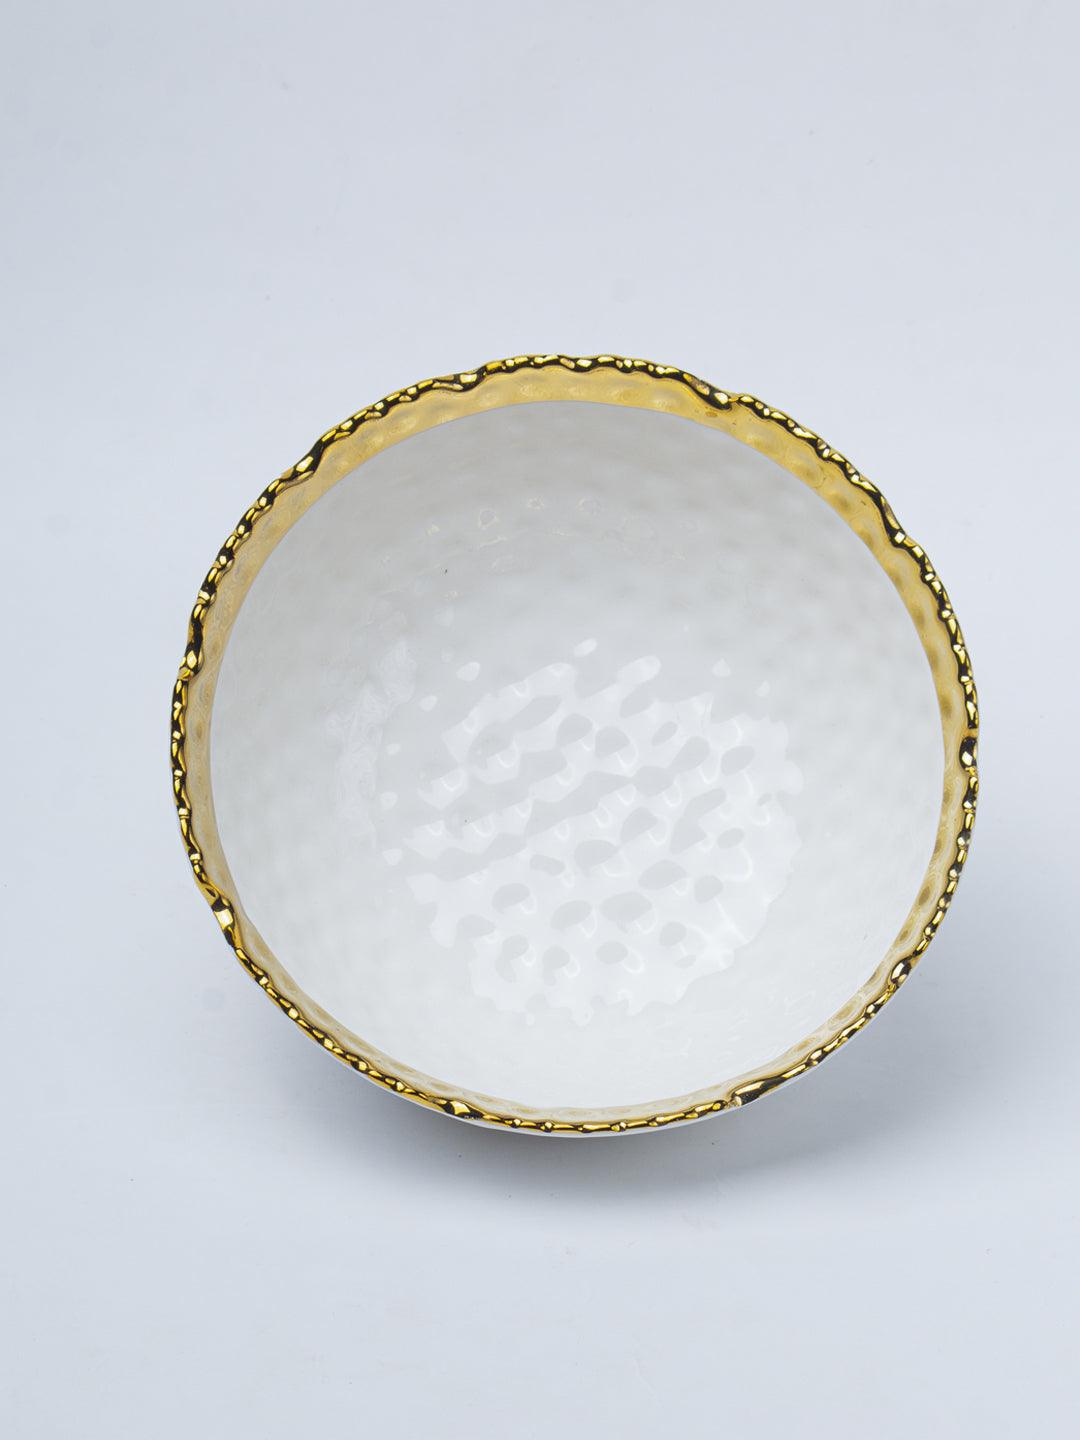 Antique Off White Ceramic Round Serving Dish - 18 x 18 x 7CM - 2